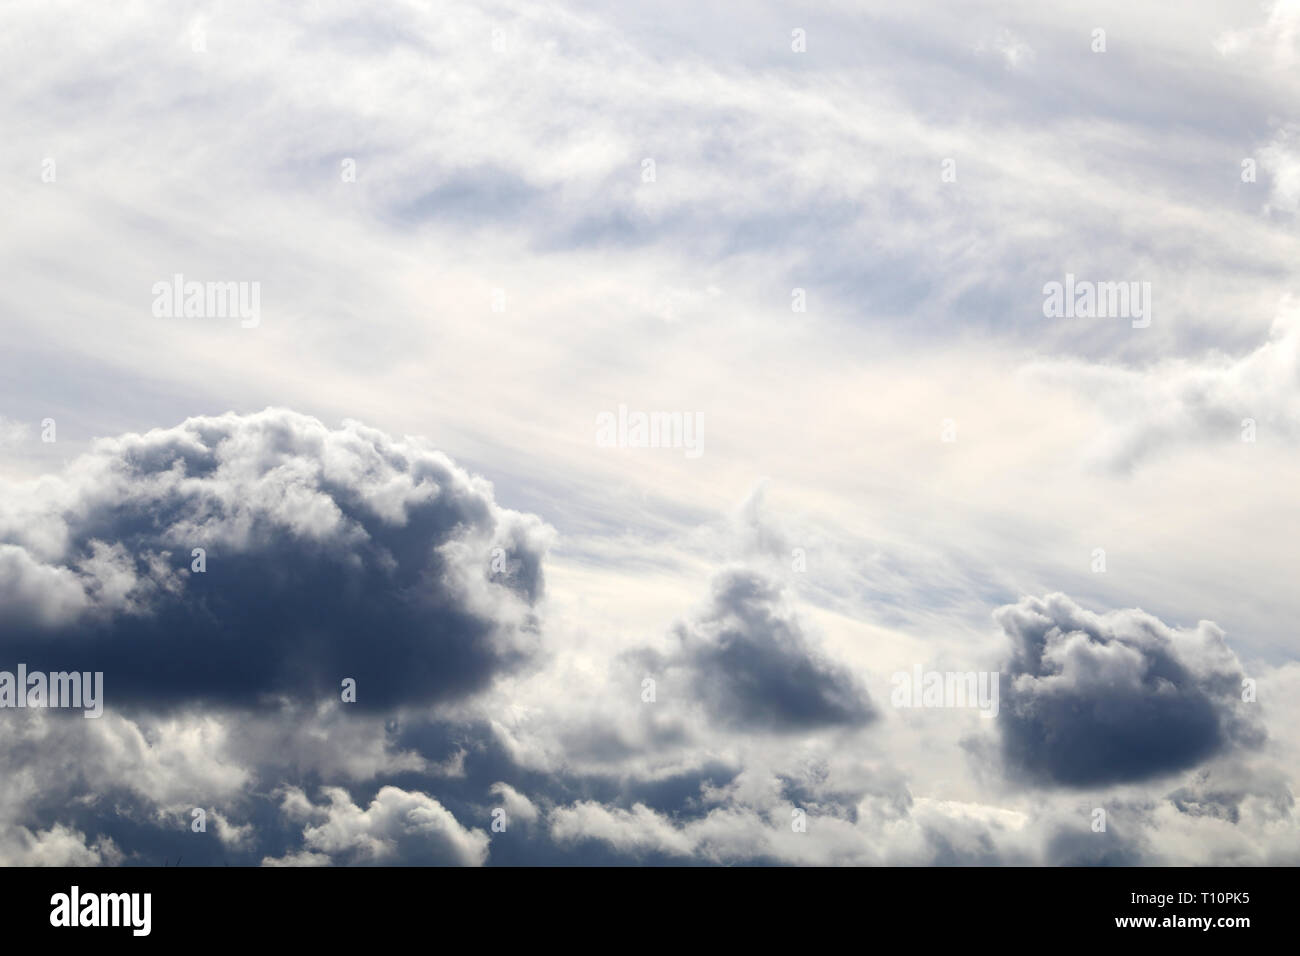 Sturm Himmel mit dunklen Wolken cumulus, cirrus Nach einem Regen. Feder bewölkter Himmel, bewölkten Tag, schöne dramatischen Hintergrund für stürmisches Wetter Stockfoto